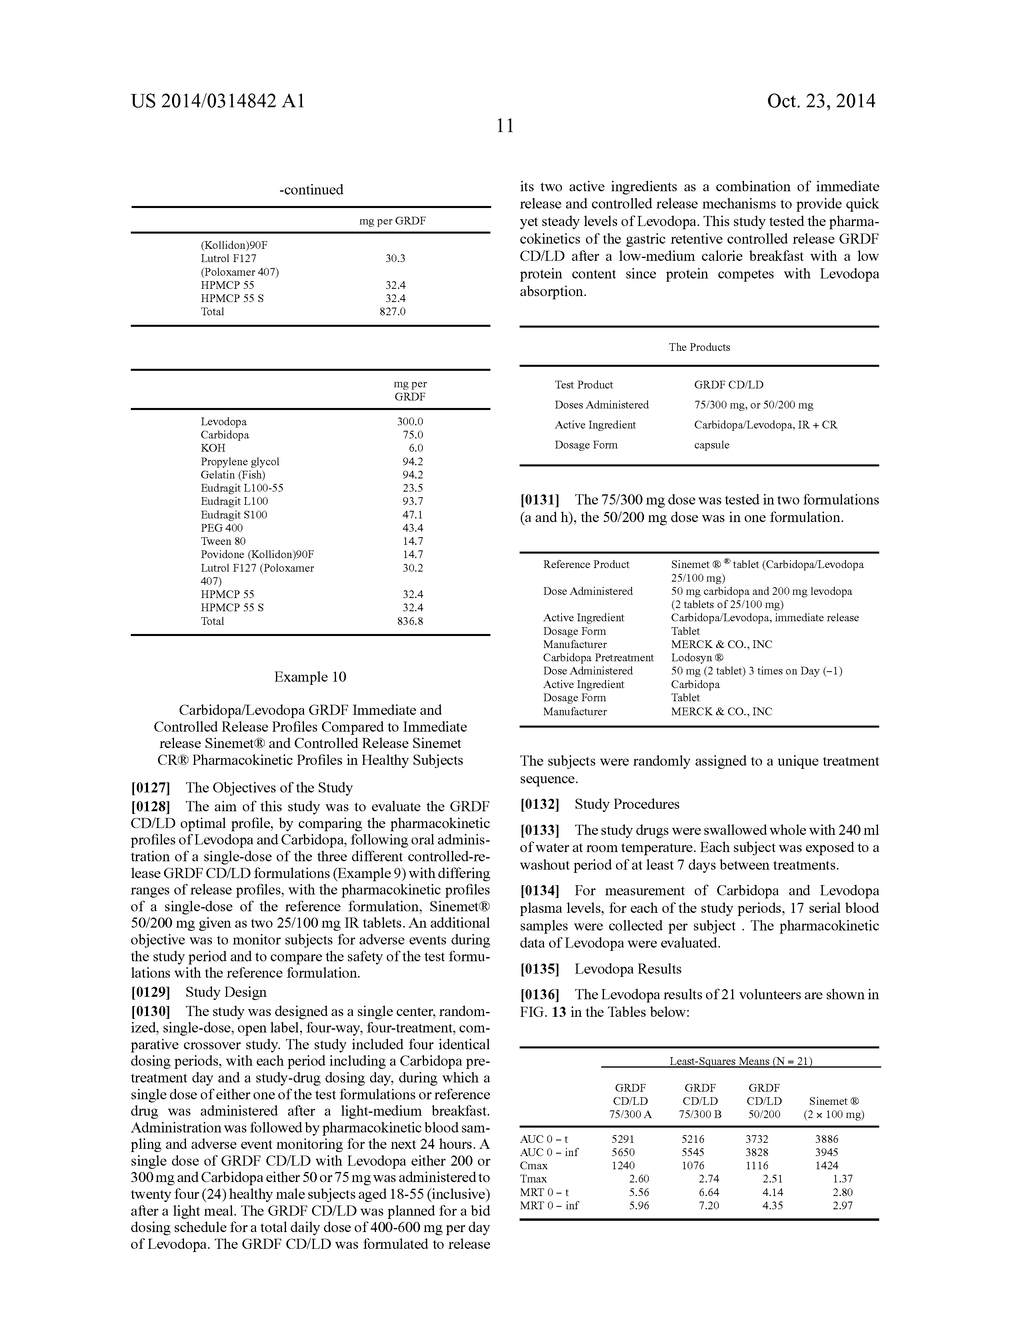 CARBIDOPA/LIPODOPA GASTRORETENTIVE DRUG DELIVERY - diagram, schematic, and image 25